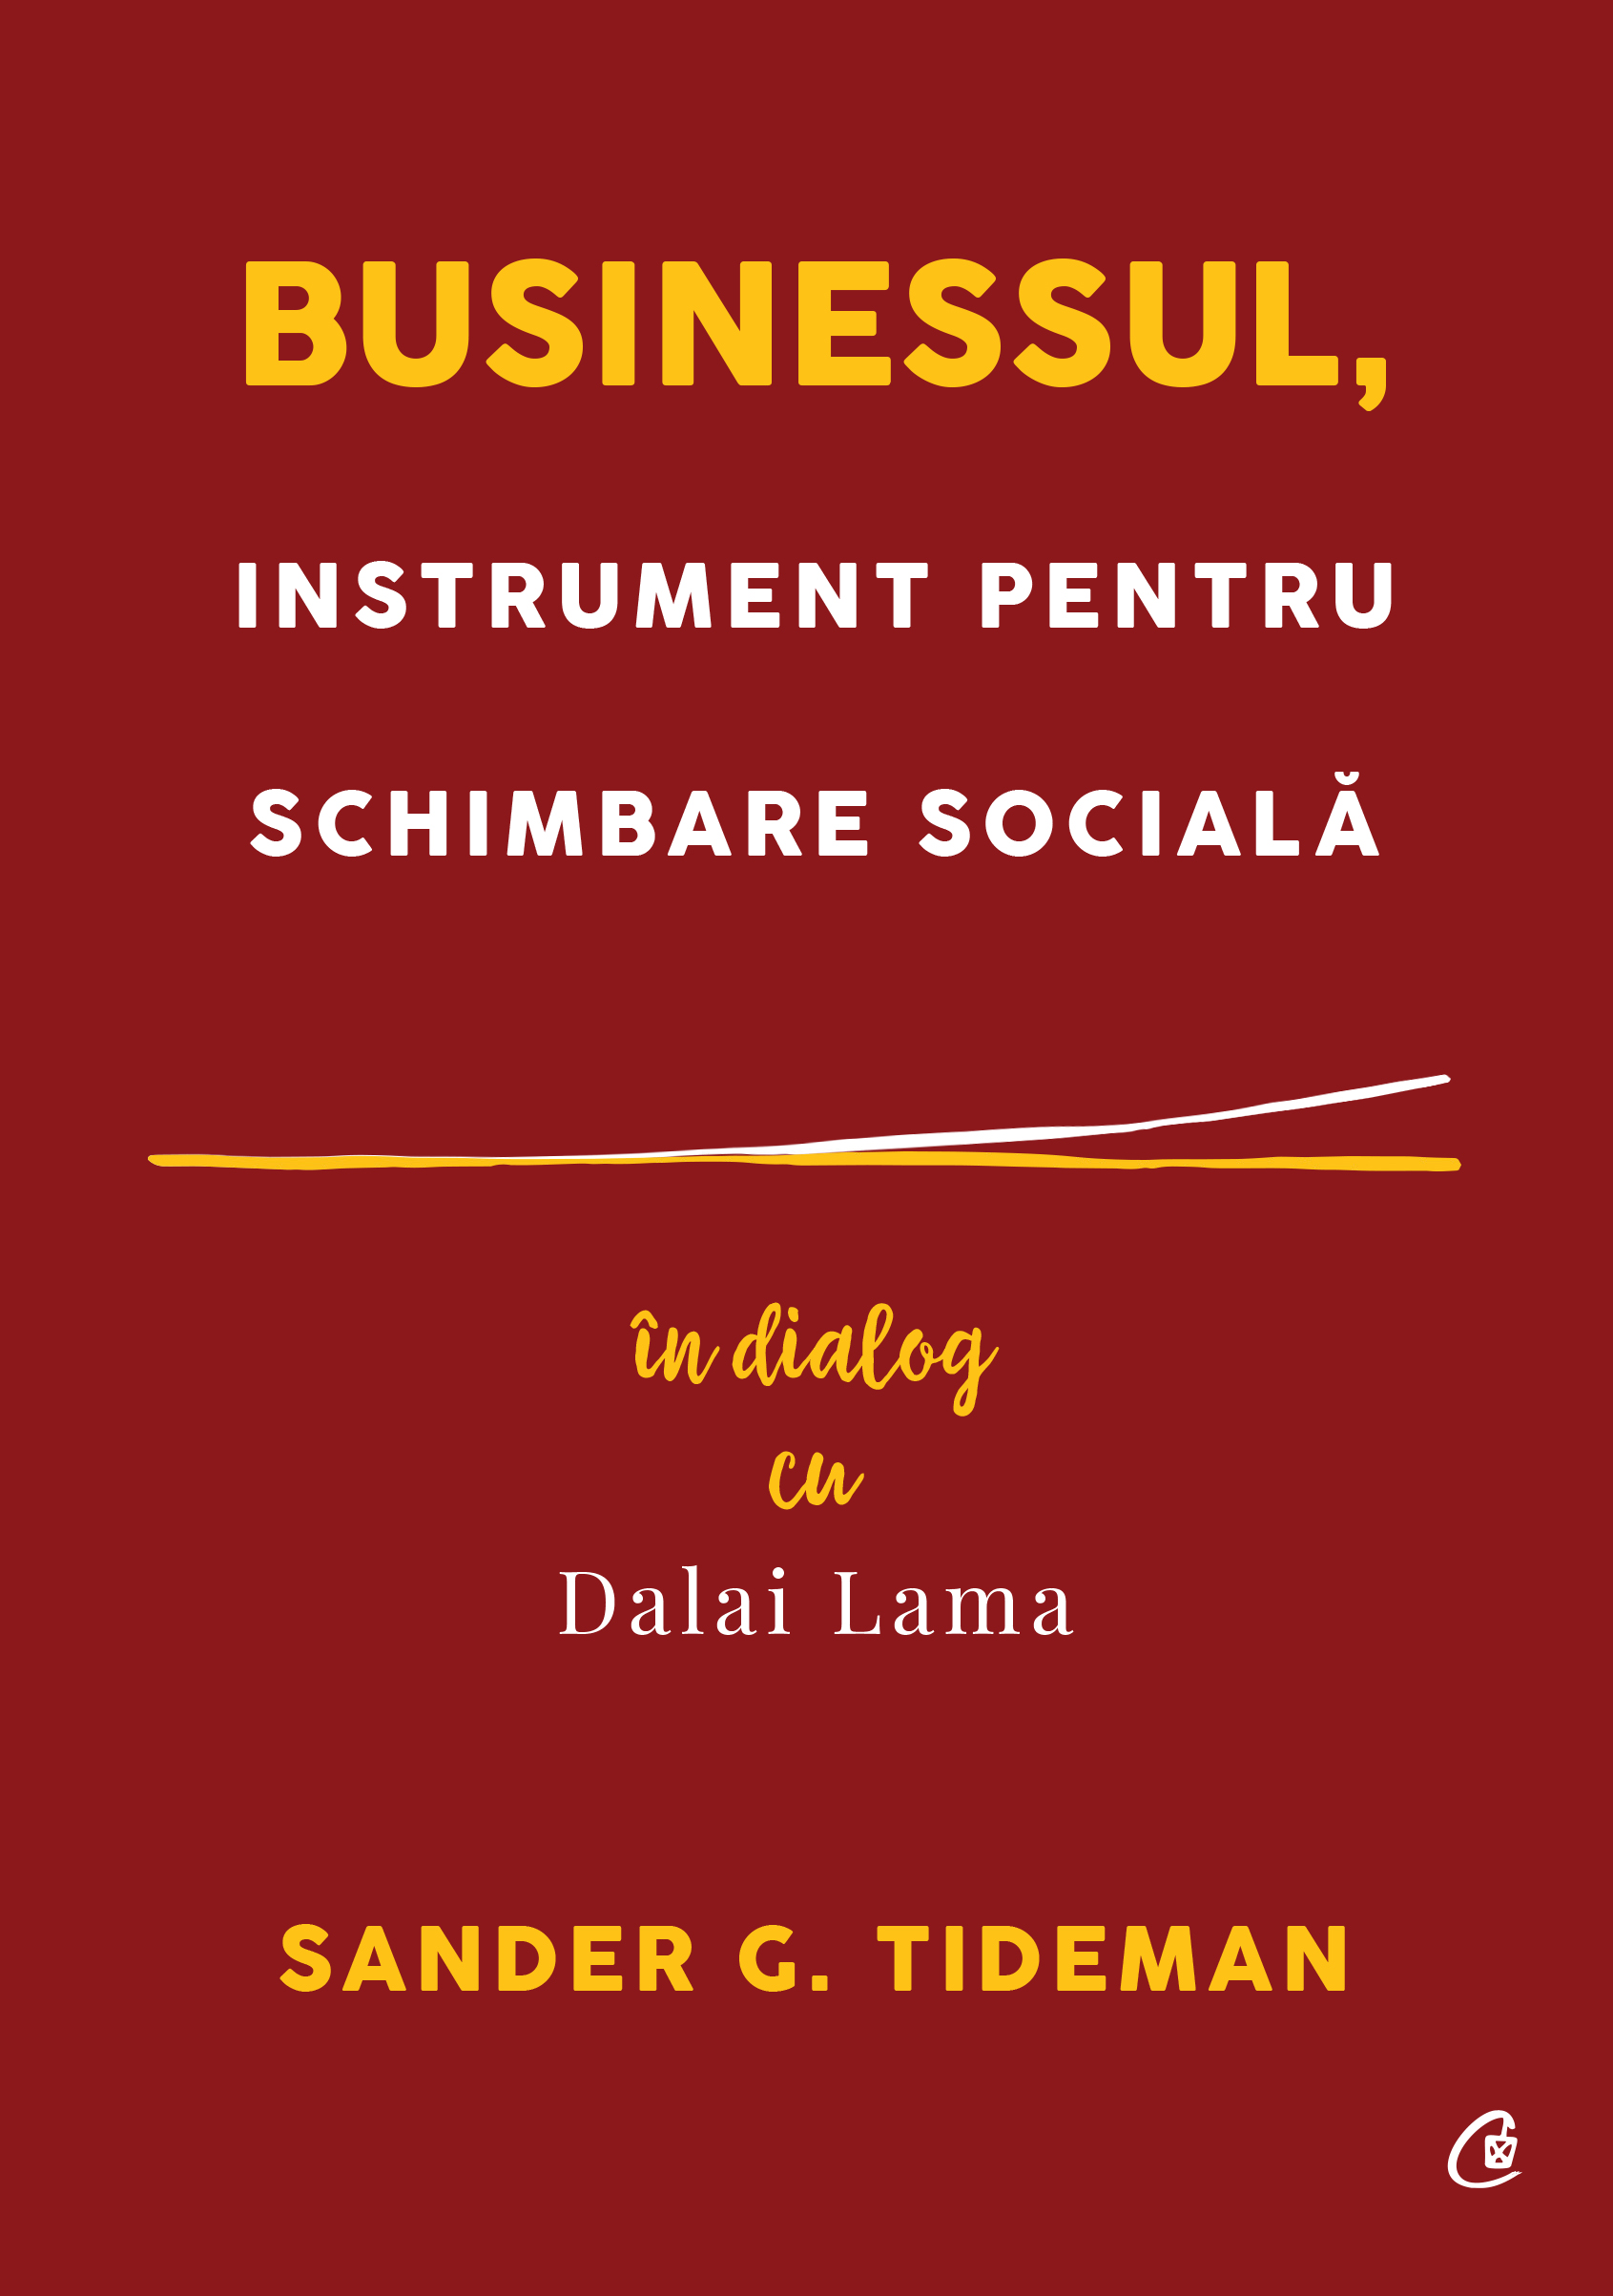 Businessul, instrument pentru schimbare sociala | Sander G. Tideman carturesti.ro imagine 2022